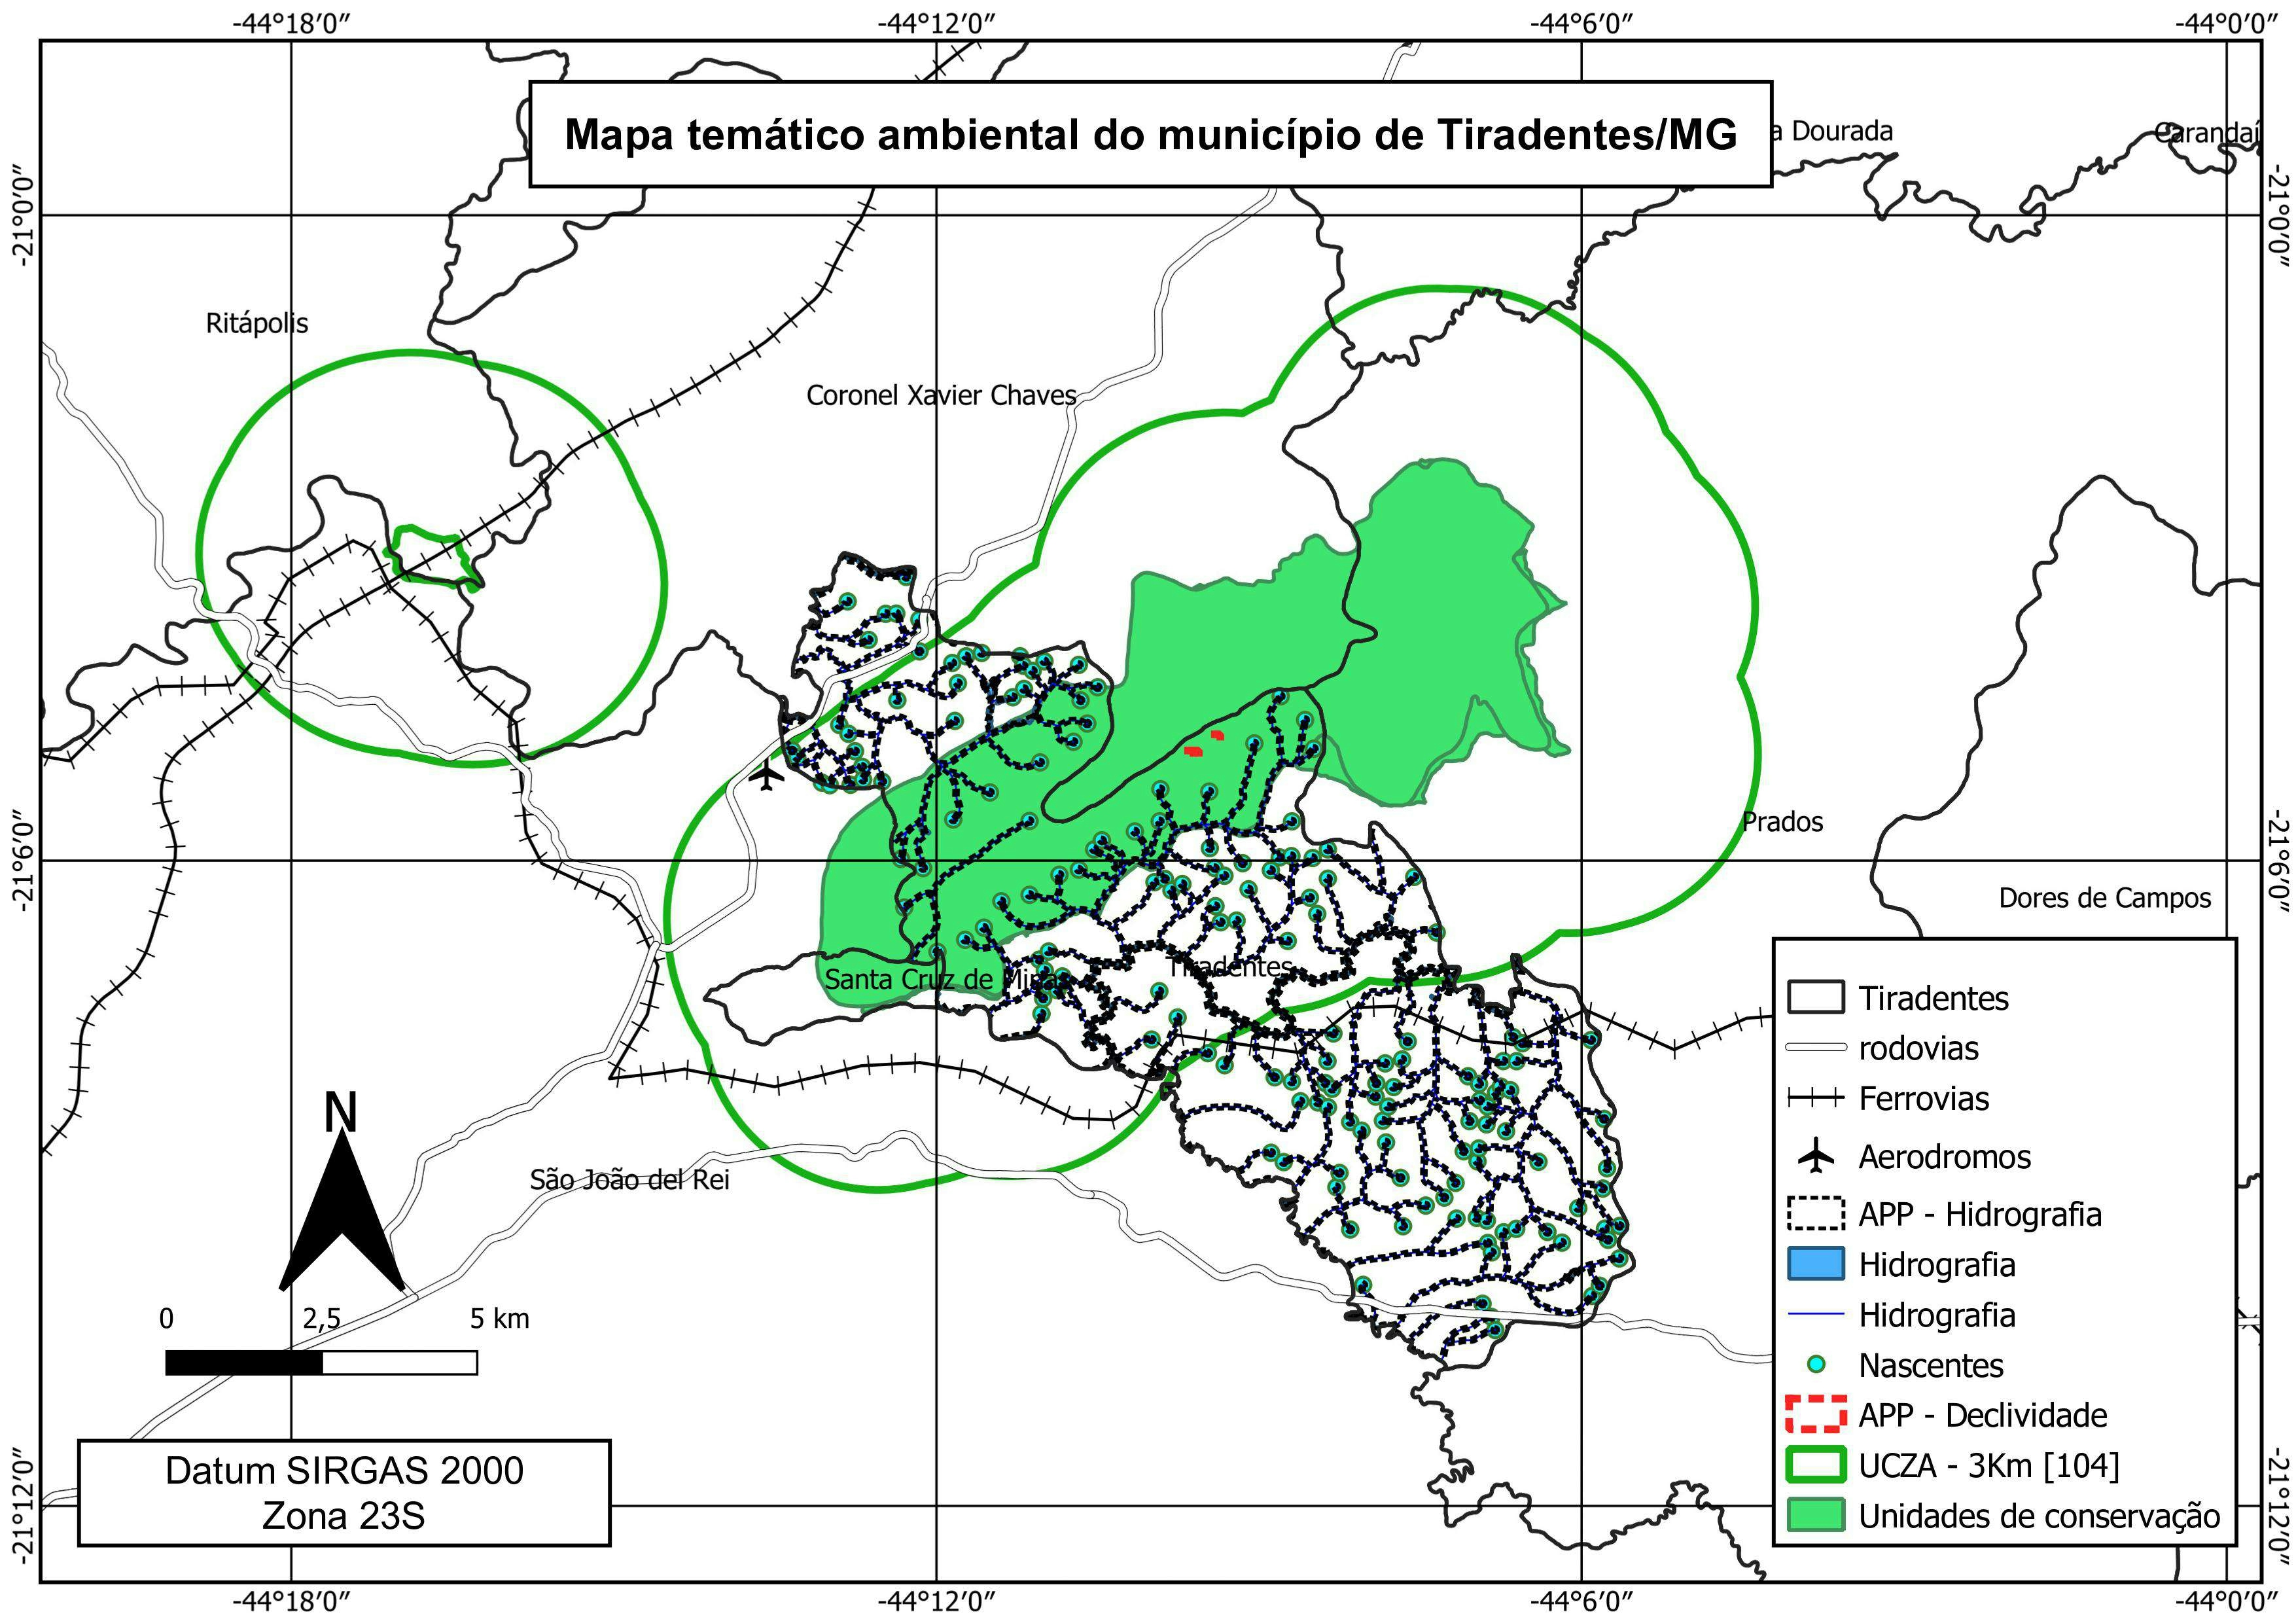 Mapa Temático Ambiental - Tiradentes/MG